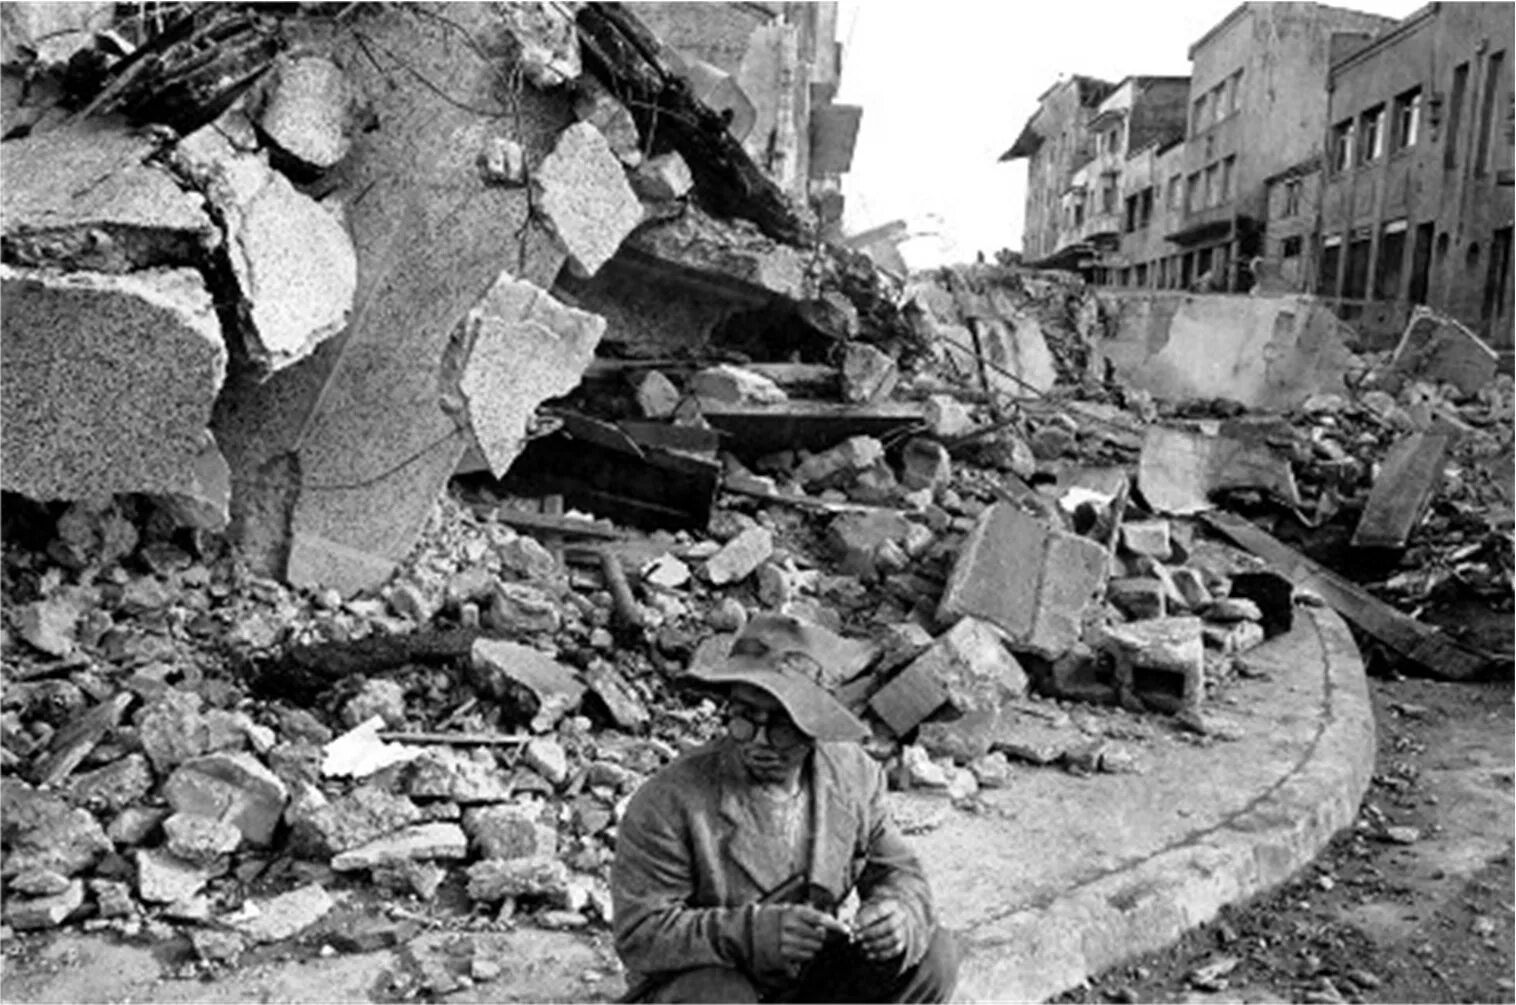 Землетрясение в м. Тянь-Шань землетрясение 1976. Таншаньское землетрясение 1976. Землетрясение в Ганьсу и Шэньси 1920. Оползень в 1920 году в Ганьсу.